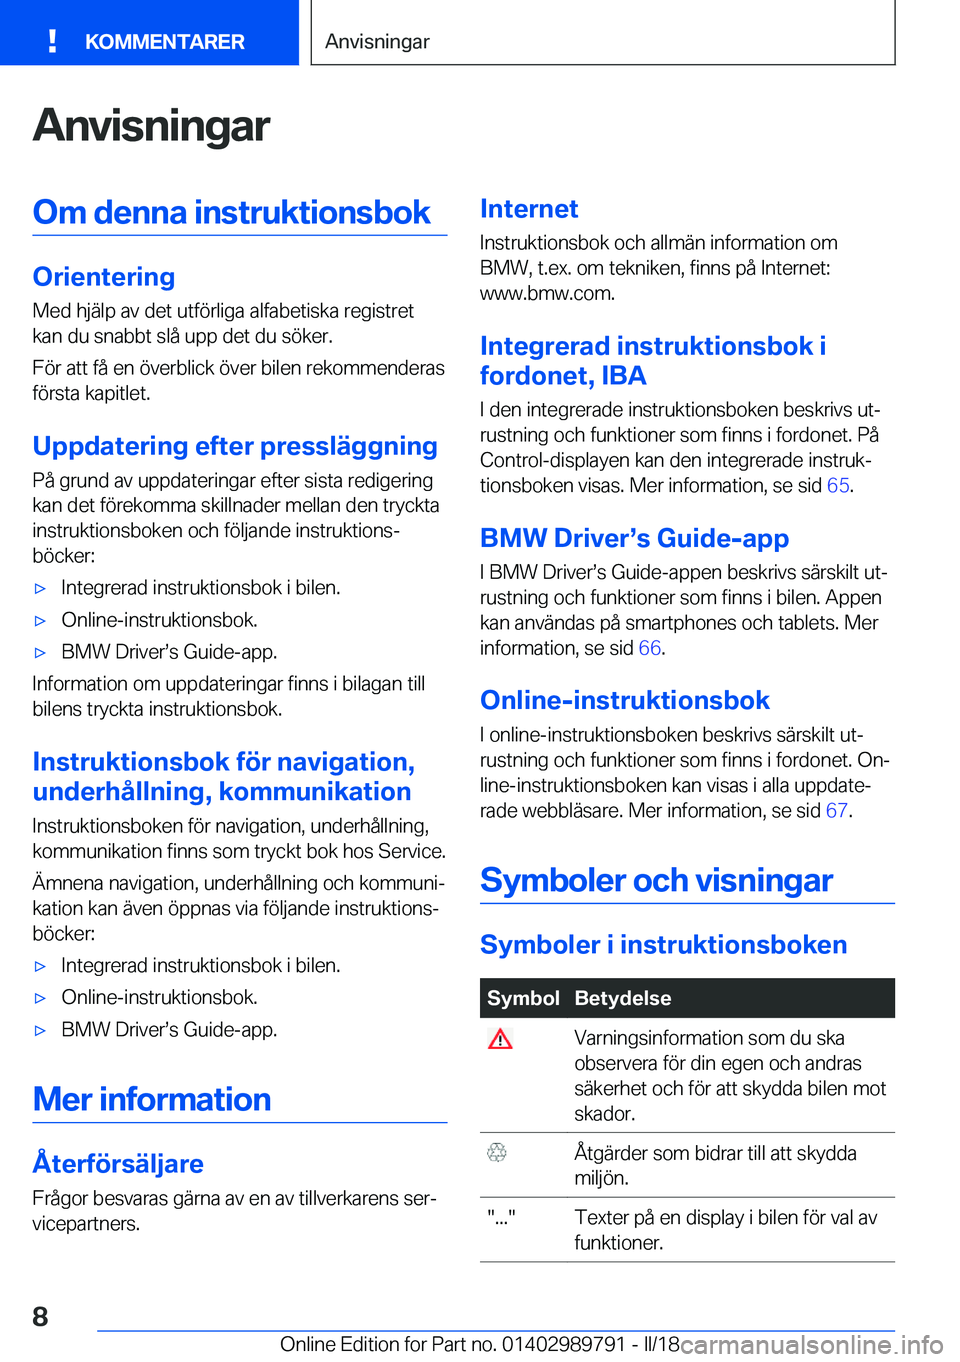 BMW M5 2018  InstruktionsbÖcker (in Swedish) �A�n�v�i�s�n�i�n�g�a�r�O�m��d�e�n�n�a��i�n�s�t�r�u�k�t�i�o�n�s�b�o�k
�O�r�i�e�n�t�e�r�i�n�g
�M�e�d� �h�j�ä�l�p� �a�v� �d�e�t� �u�t�f�ö�r�l�i�g�a� �a�l�f�a�b�e�t�i�s�k�a� �r�e�g�i�s�t�r�e�t �k�a�n�